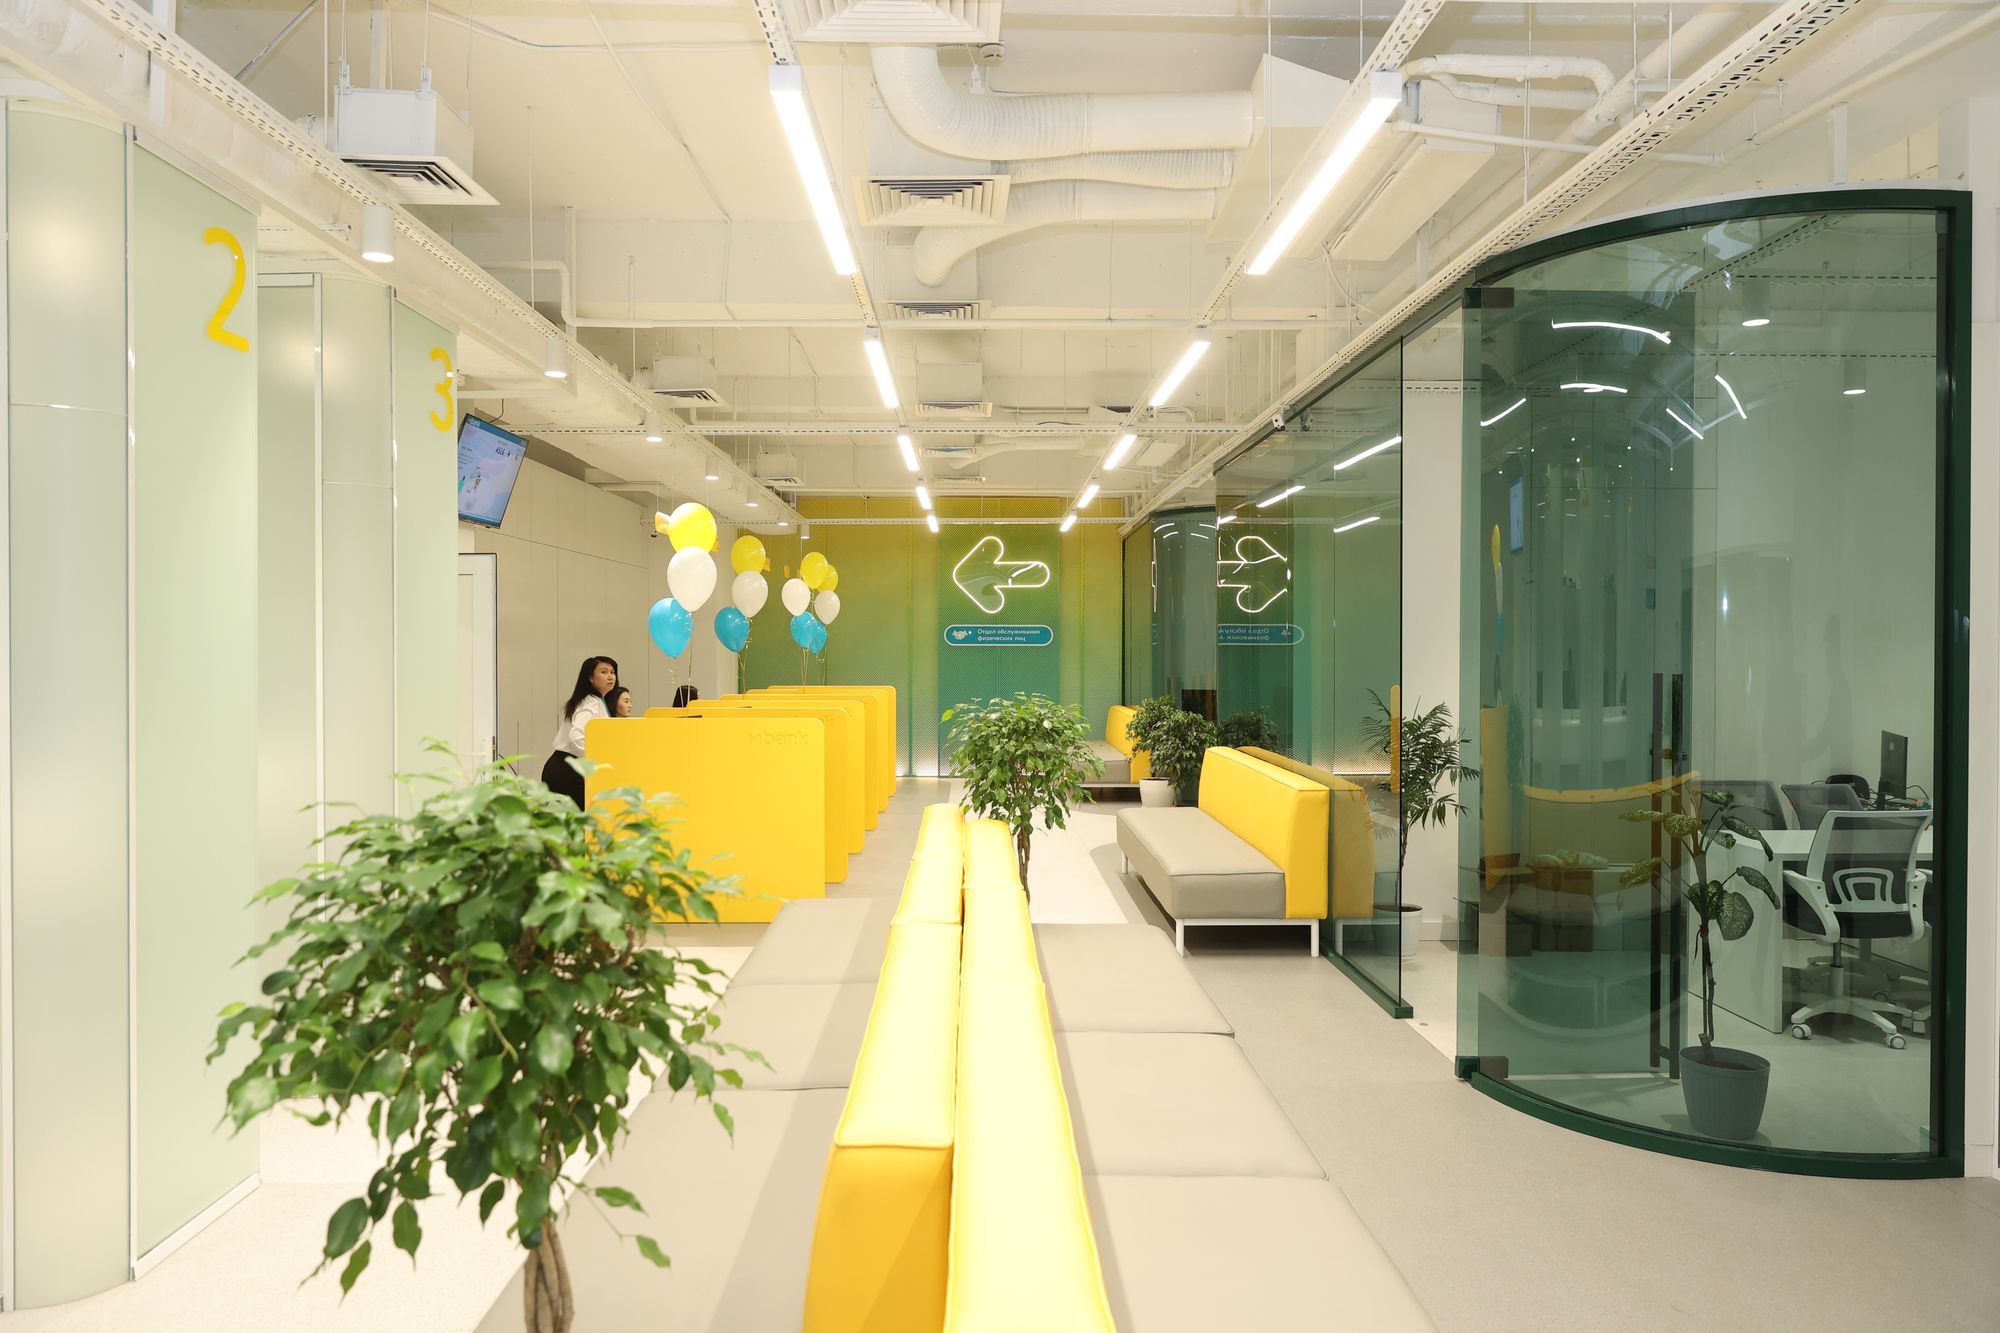 MBANK открыл флагманский офис в ТЦ «Дордой Плаза-2». Что нового вас ждёт?